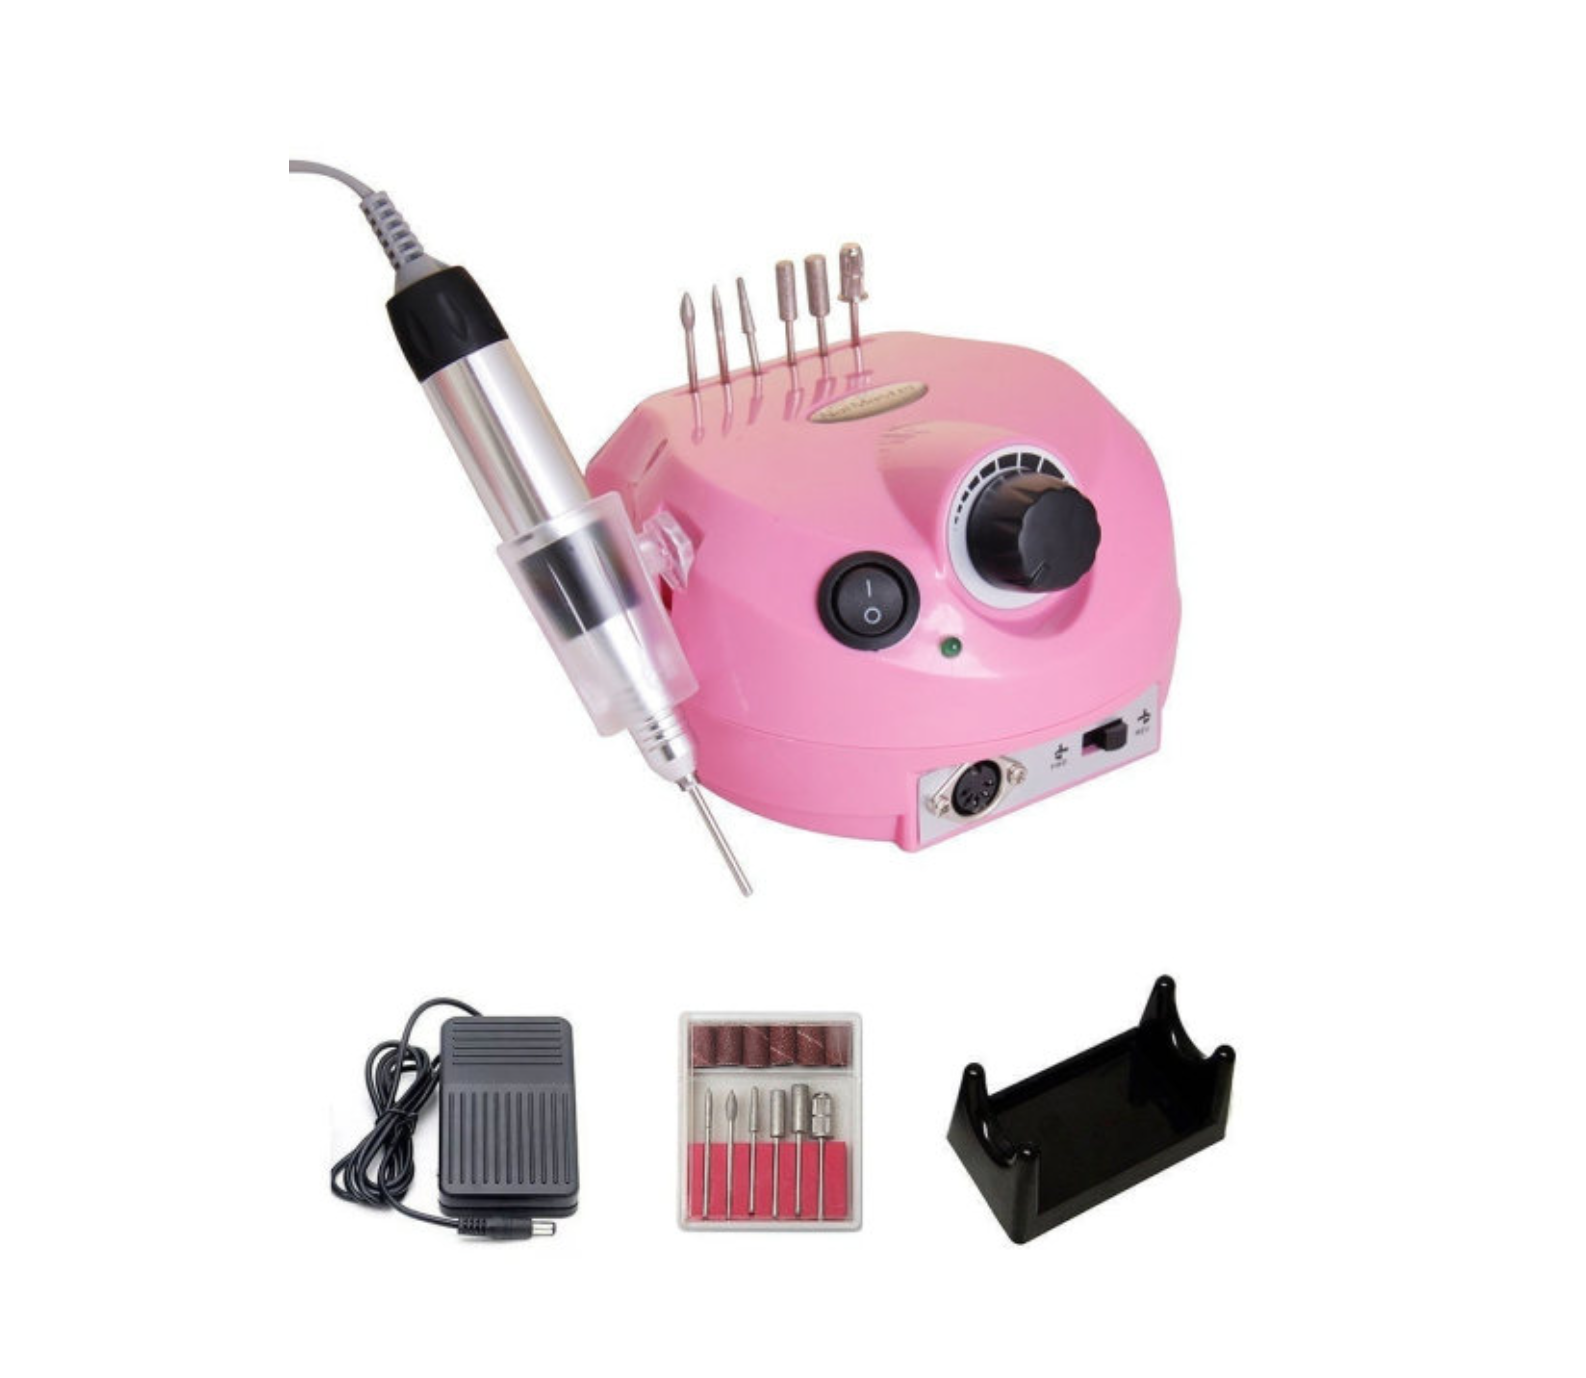 Электрическая дрель для маникюра и педикюра DM-202 аппарат мини ручка для маникюра и педикюра nail drill розовый